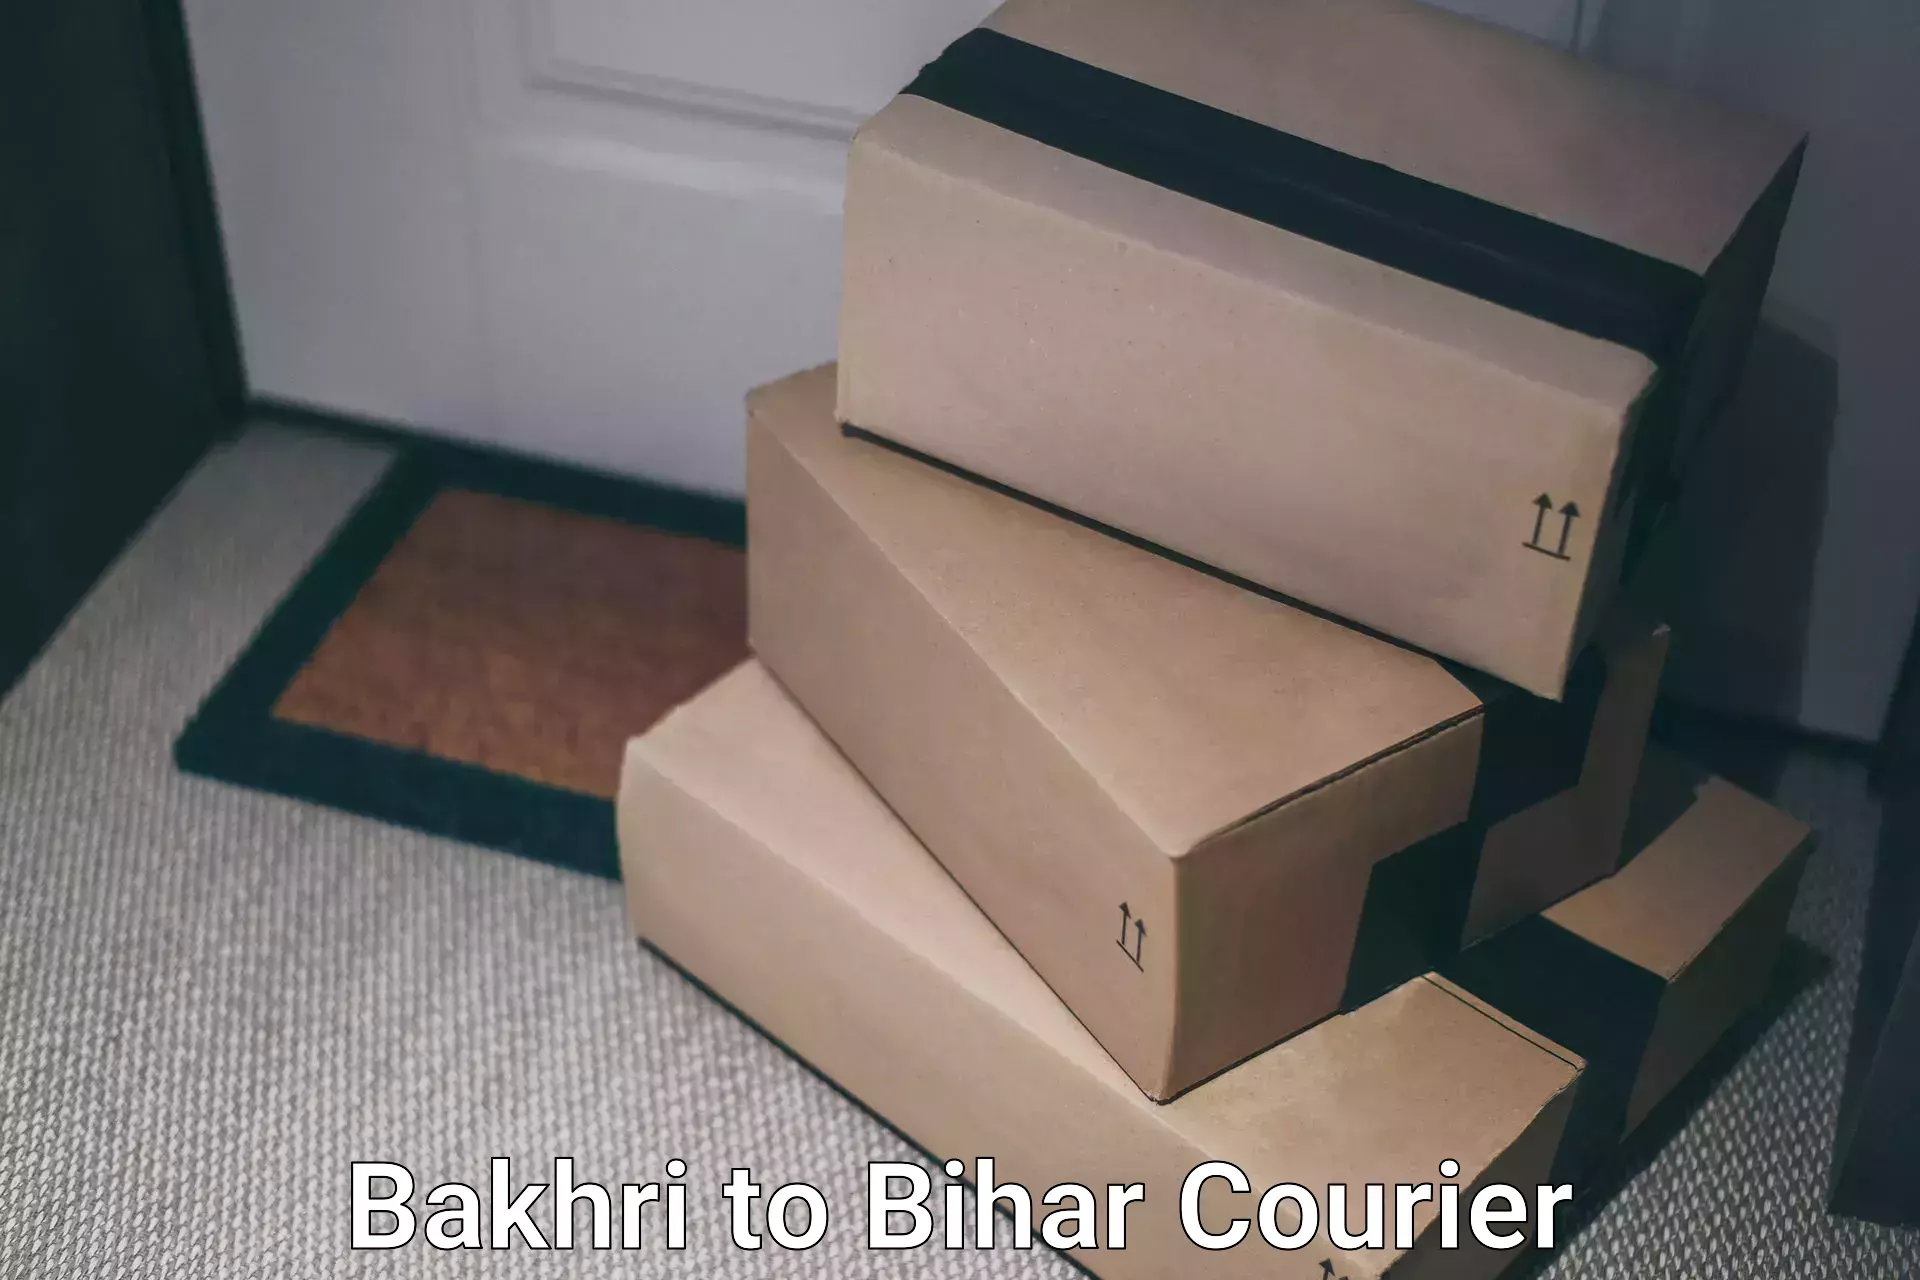 Premium courier solutions Bakhri to Bihar